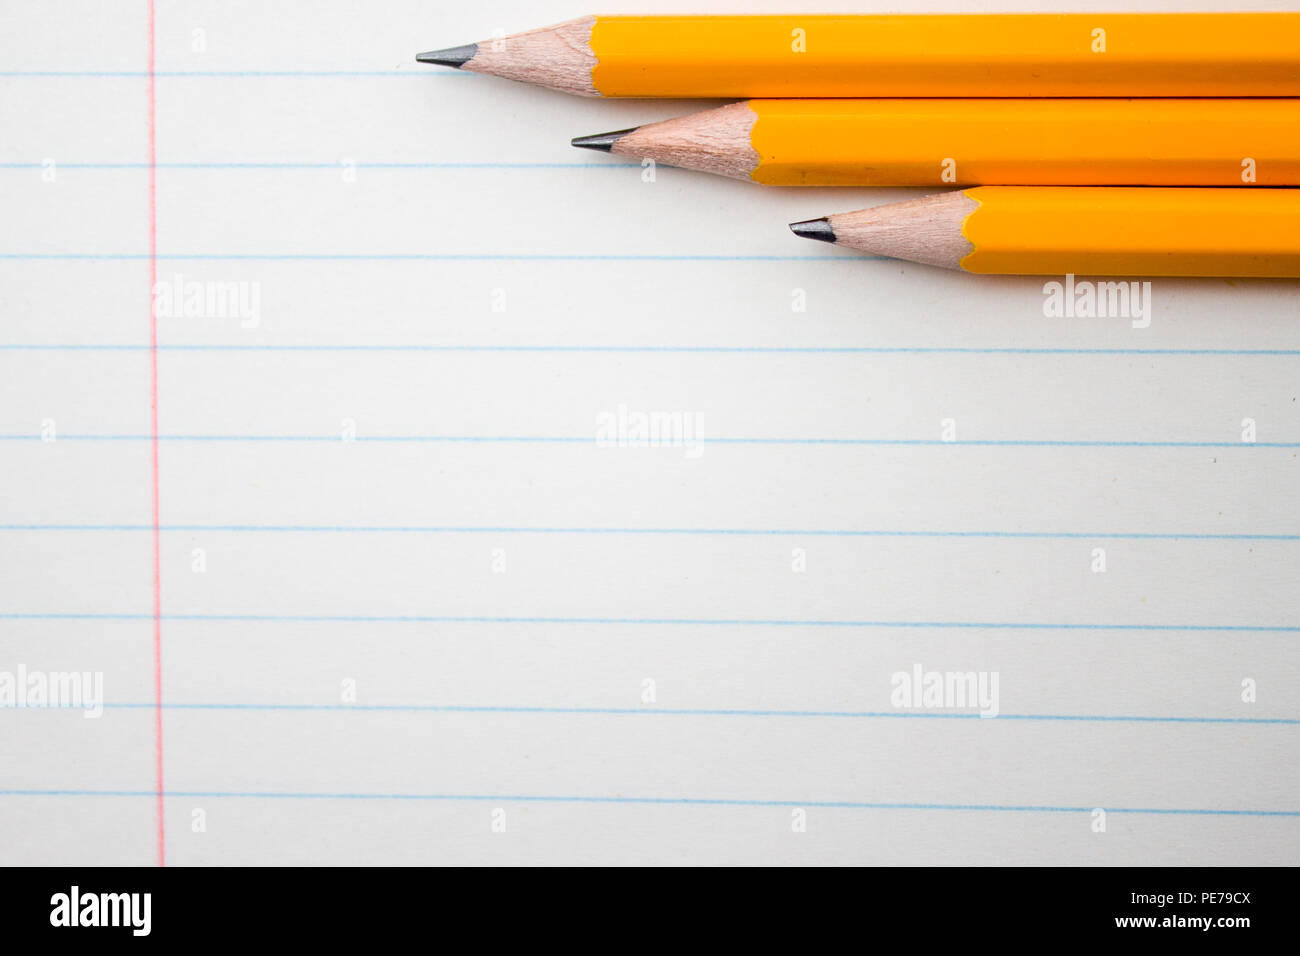 De vuelta a la escuela, la educación concepto - lápices de color naranja cerca y composición libro sobre antecedentes para el nuevo año académico educativo comenzar o plazo de estudio Foto de stock